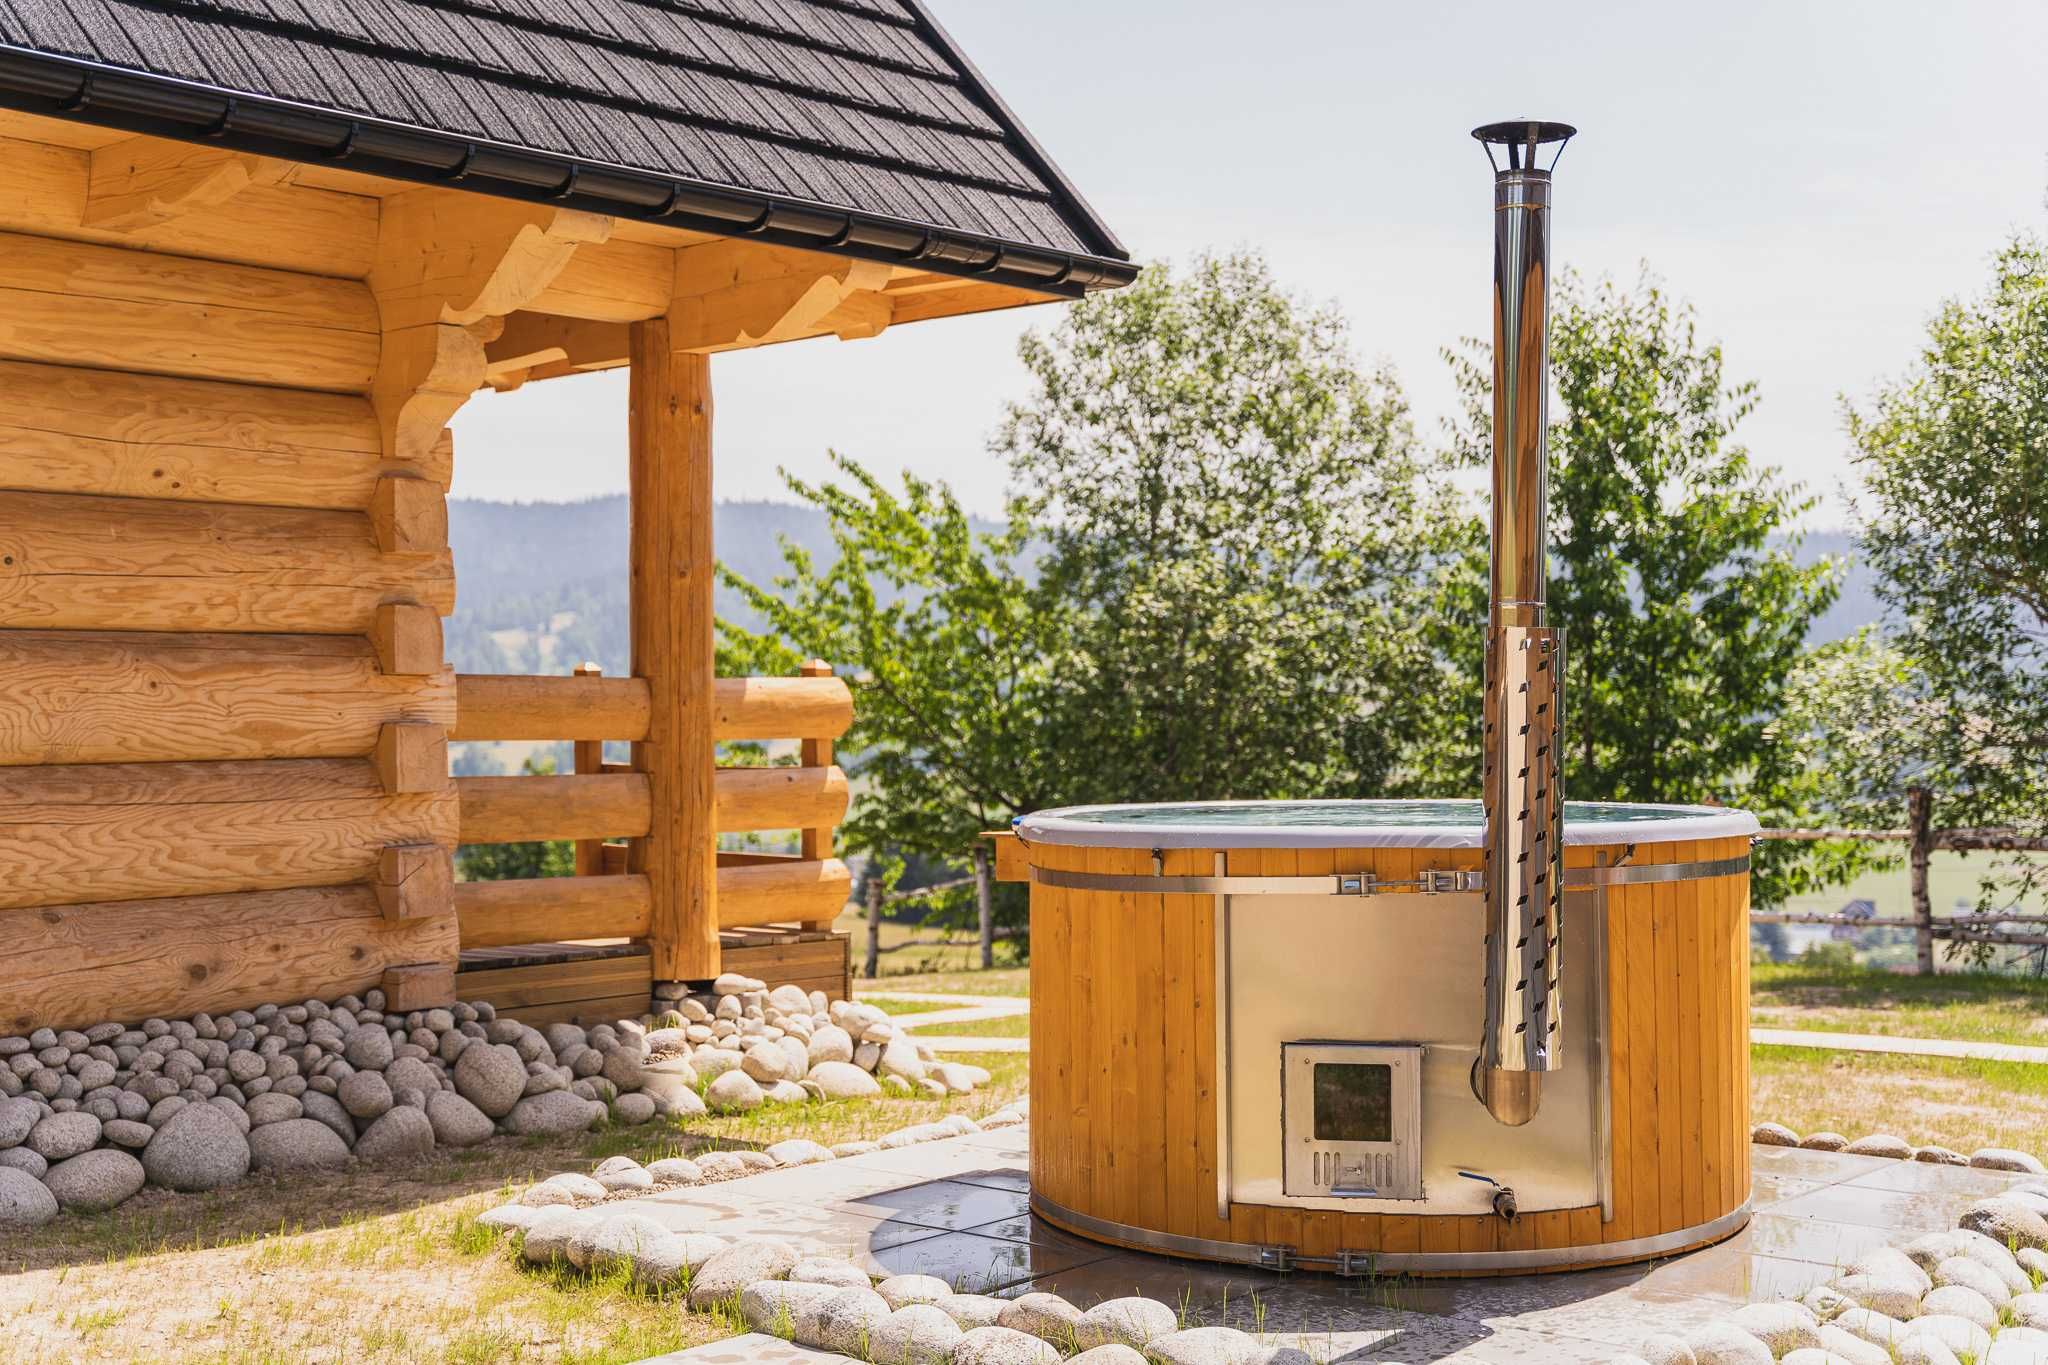 Domek w górach do wynajęcia Tatry Gorce sauna jacuzzi balia